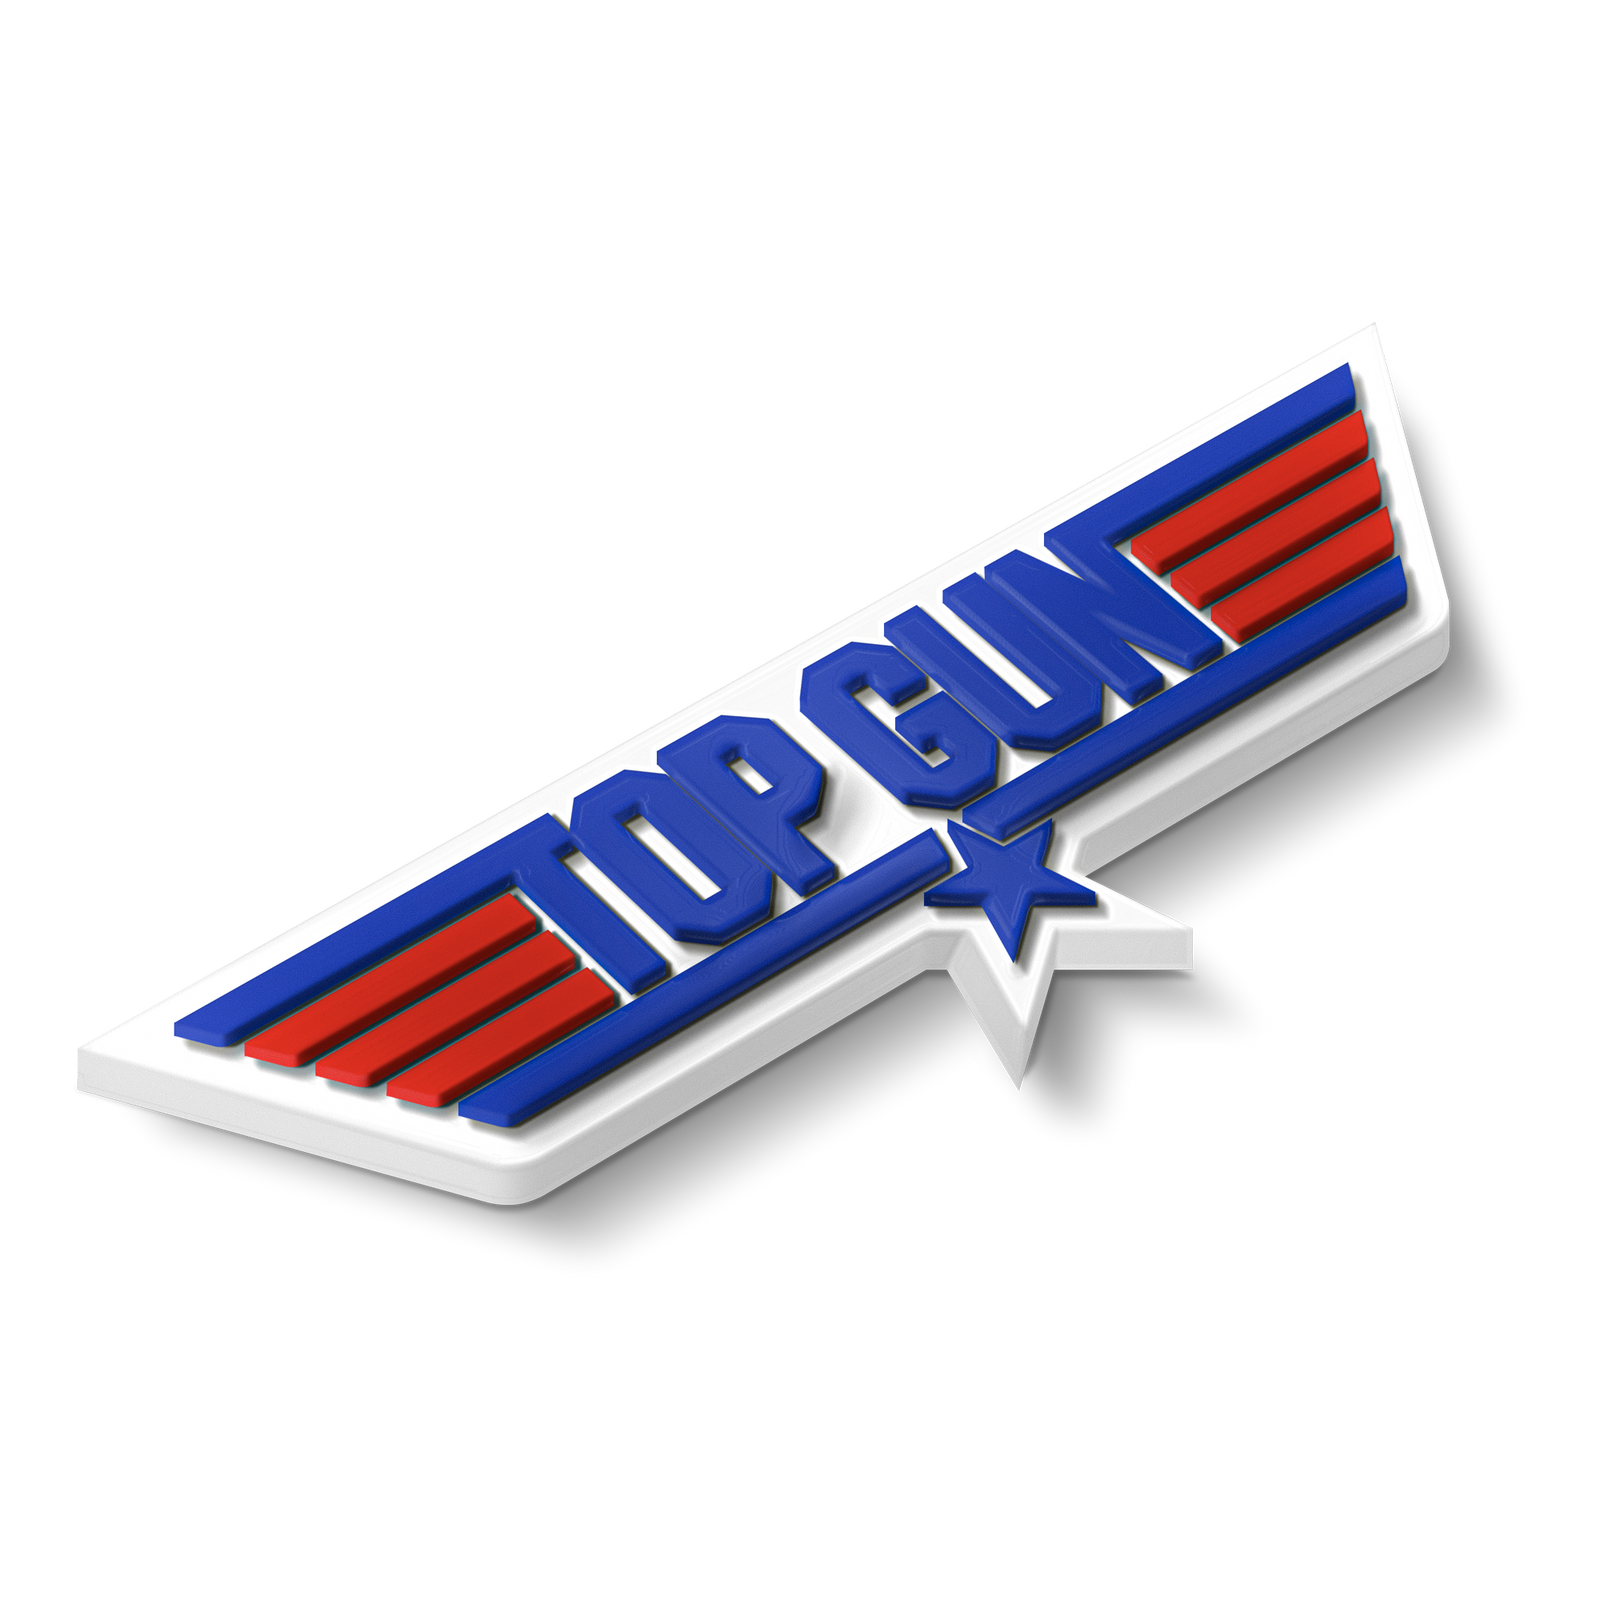 Top Gun logo.